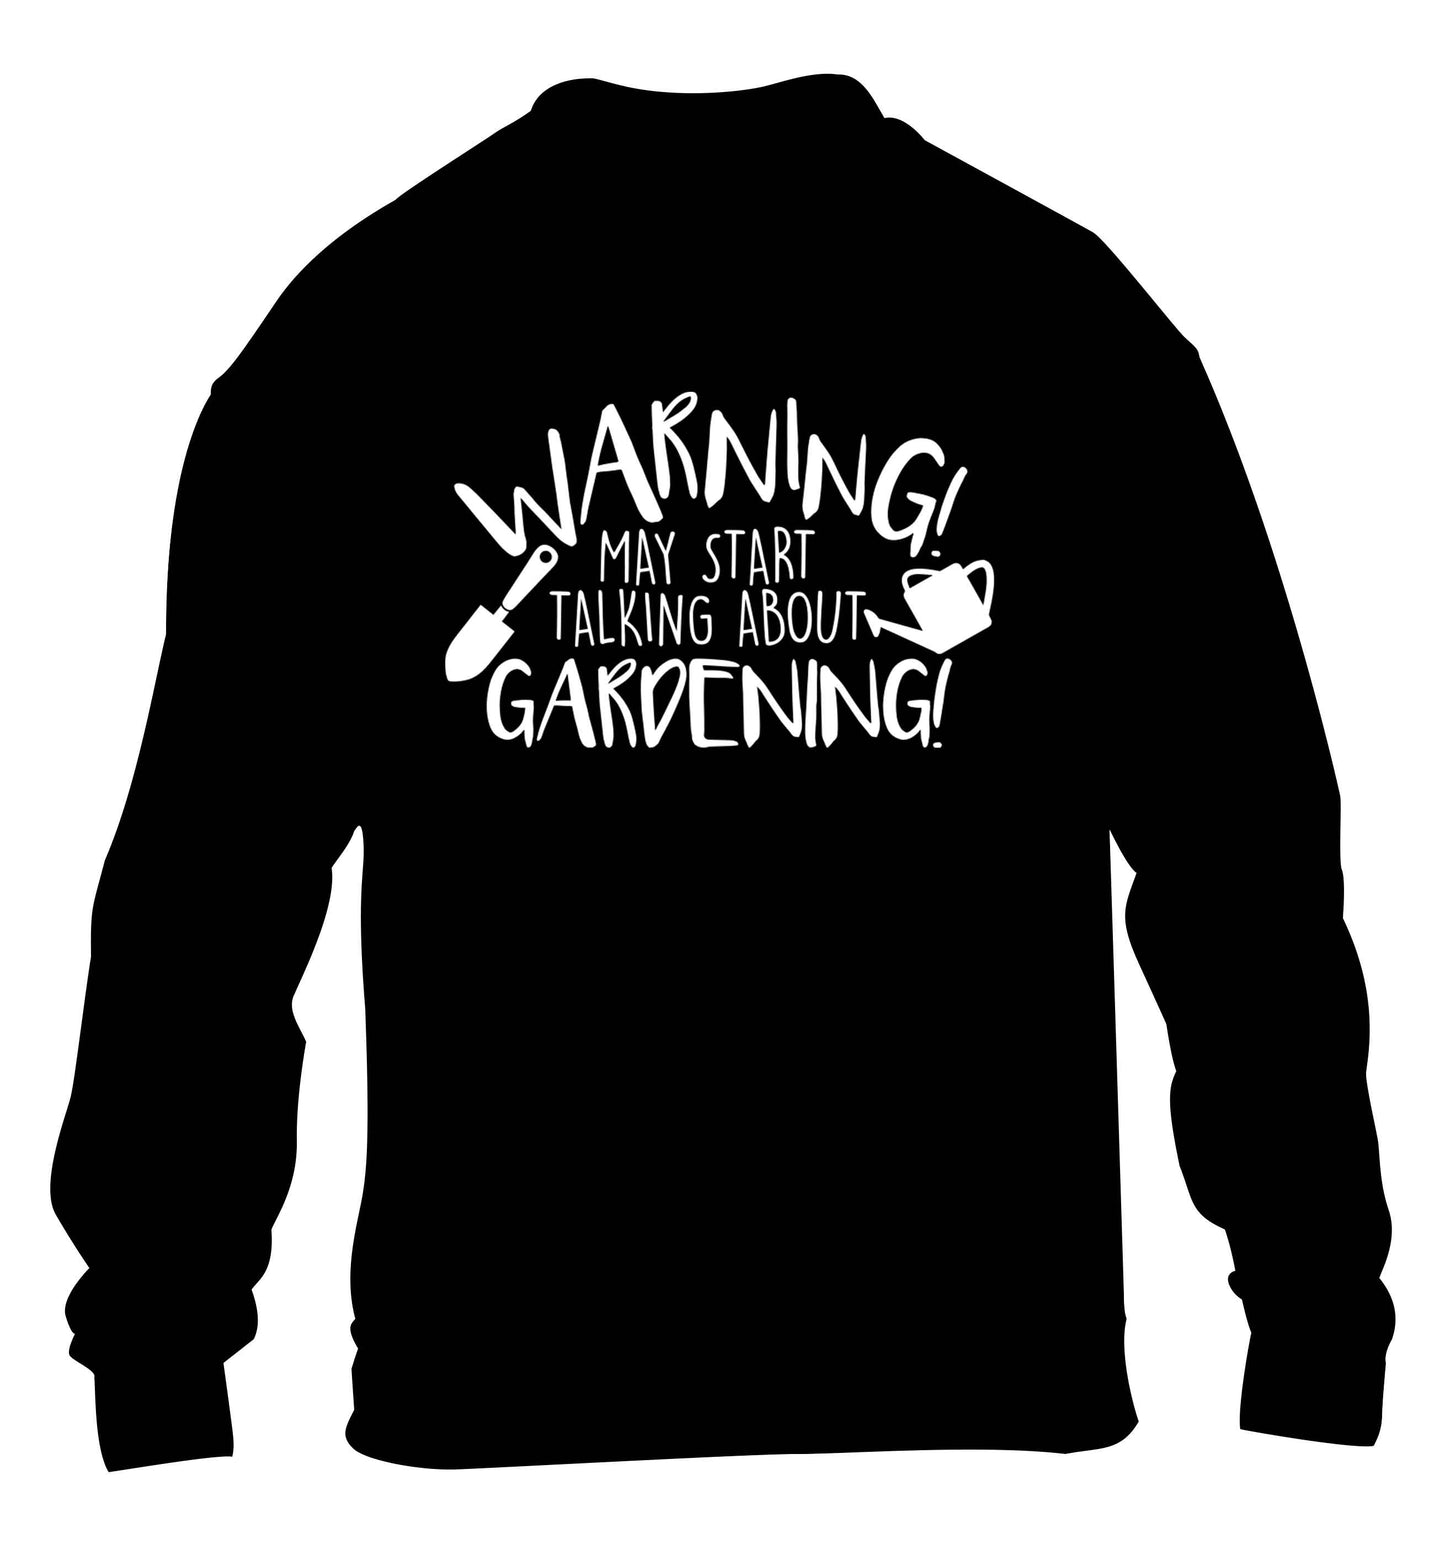 Warning may start talking about gardening children's black sweater 12-13 Years